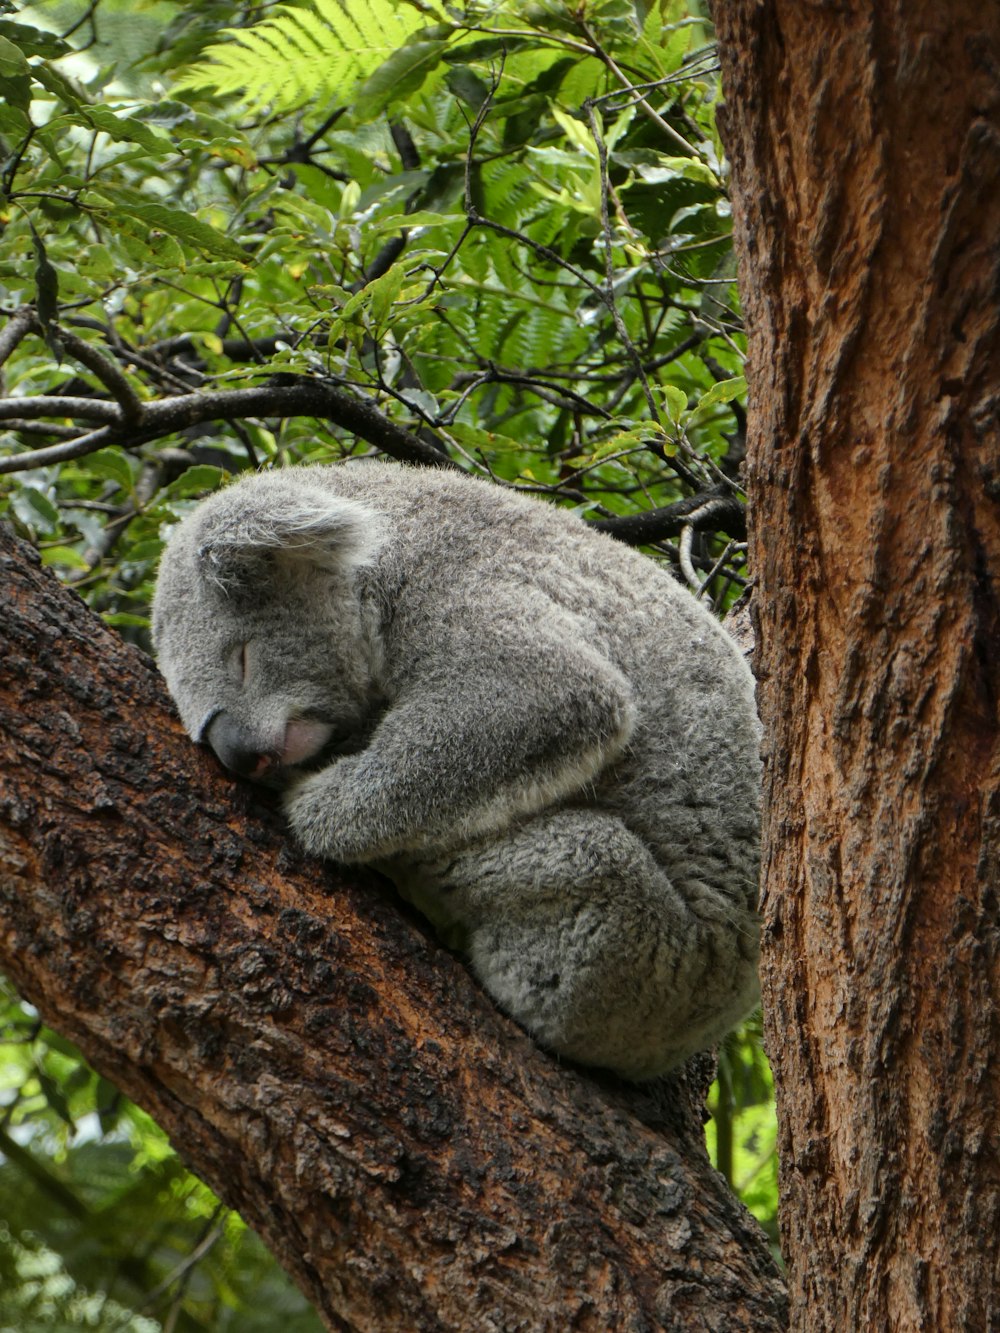 a koala sleeping on a tree branch in a forest